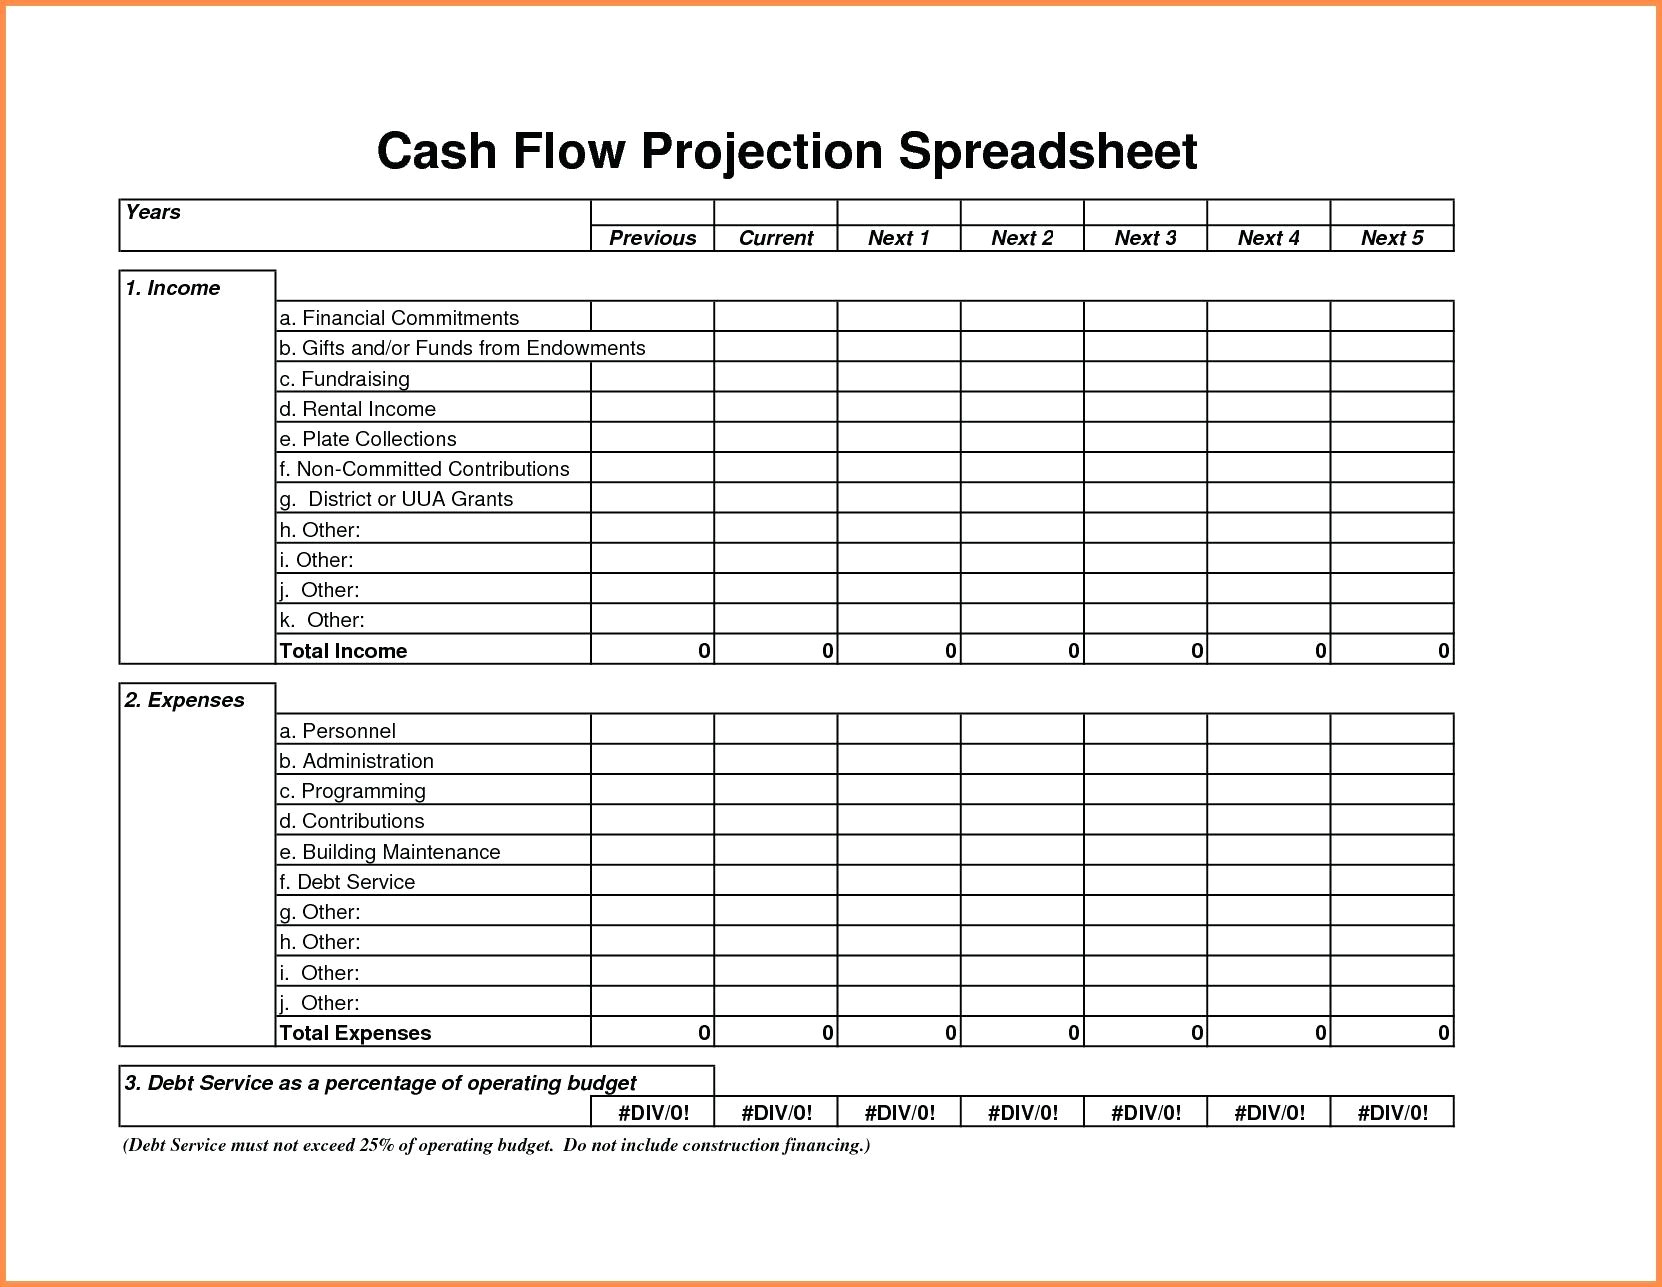 Cash Flow Projection Spreadsheet For Cash Flow Projections Spreadsheet Unique Free Spreadsheet